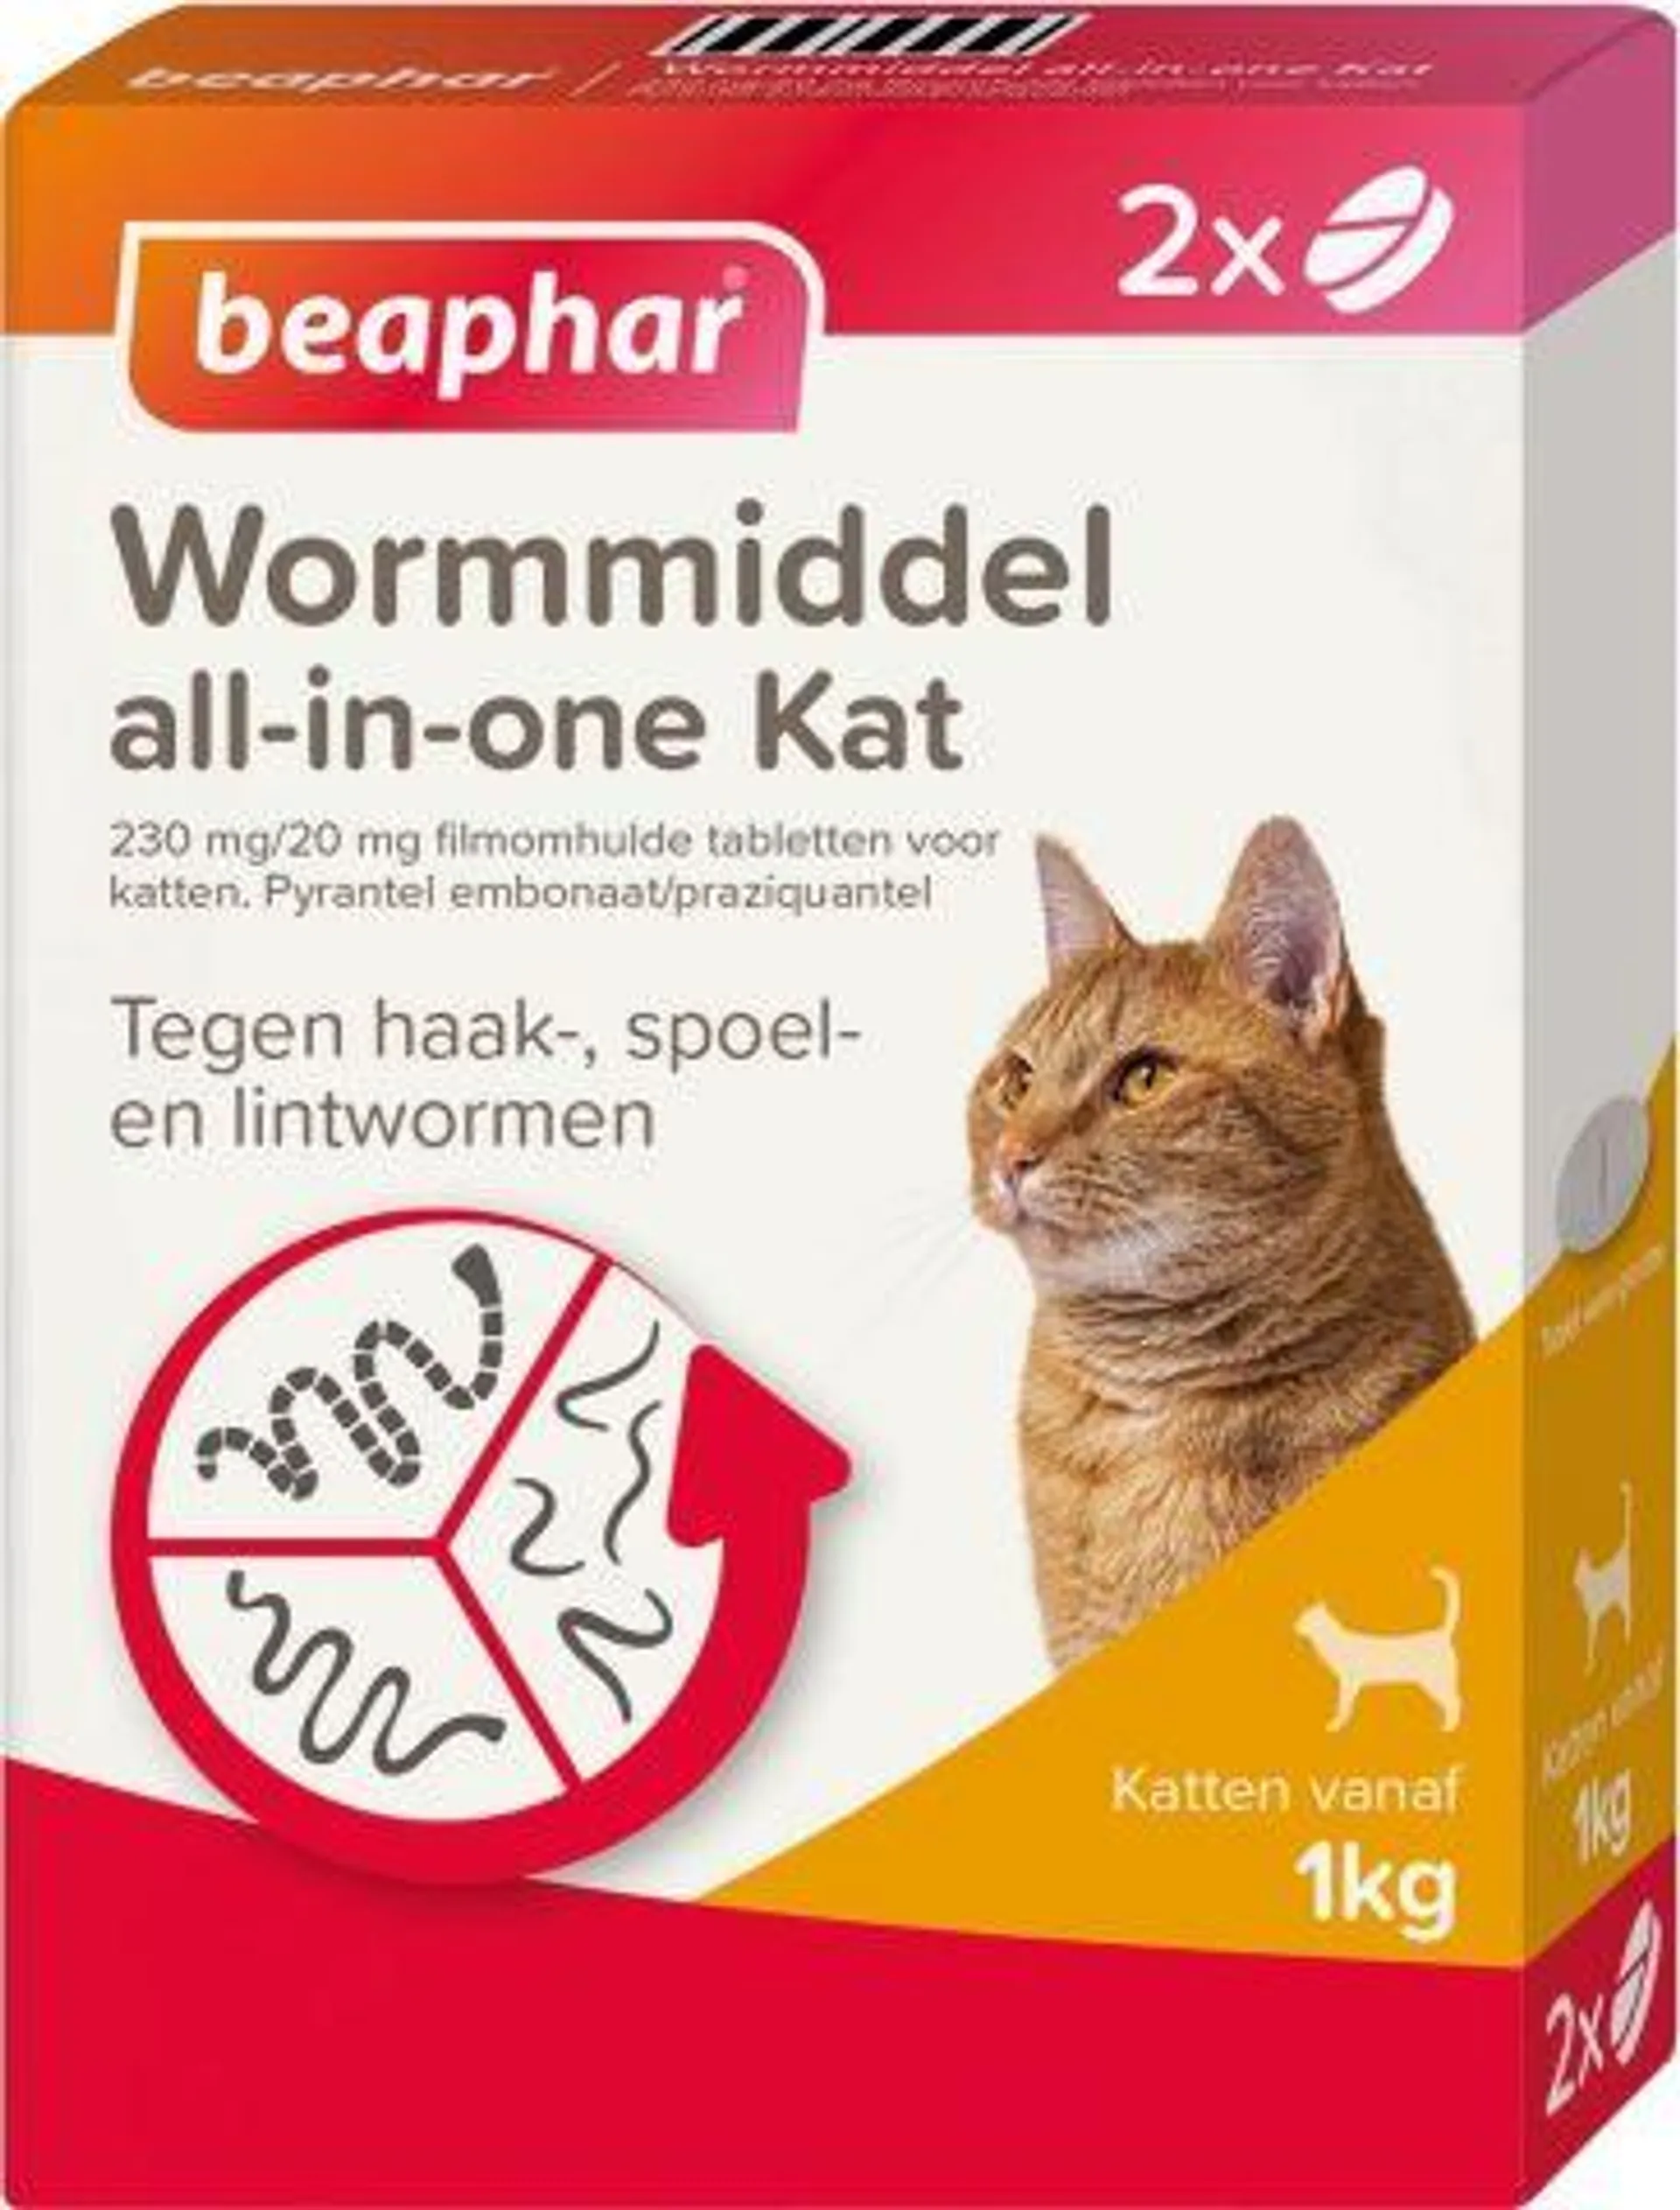 Beaphar all-in-one Kat - Wormmiddel - 2 stuks